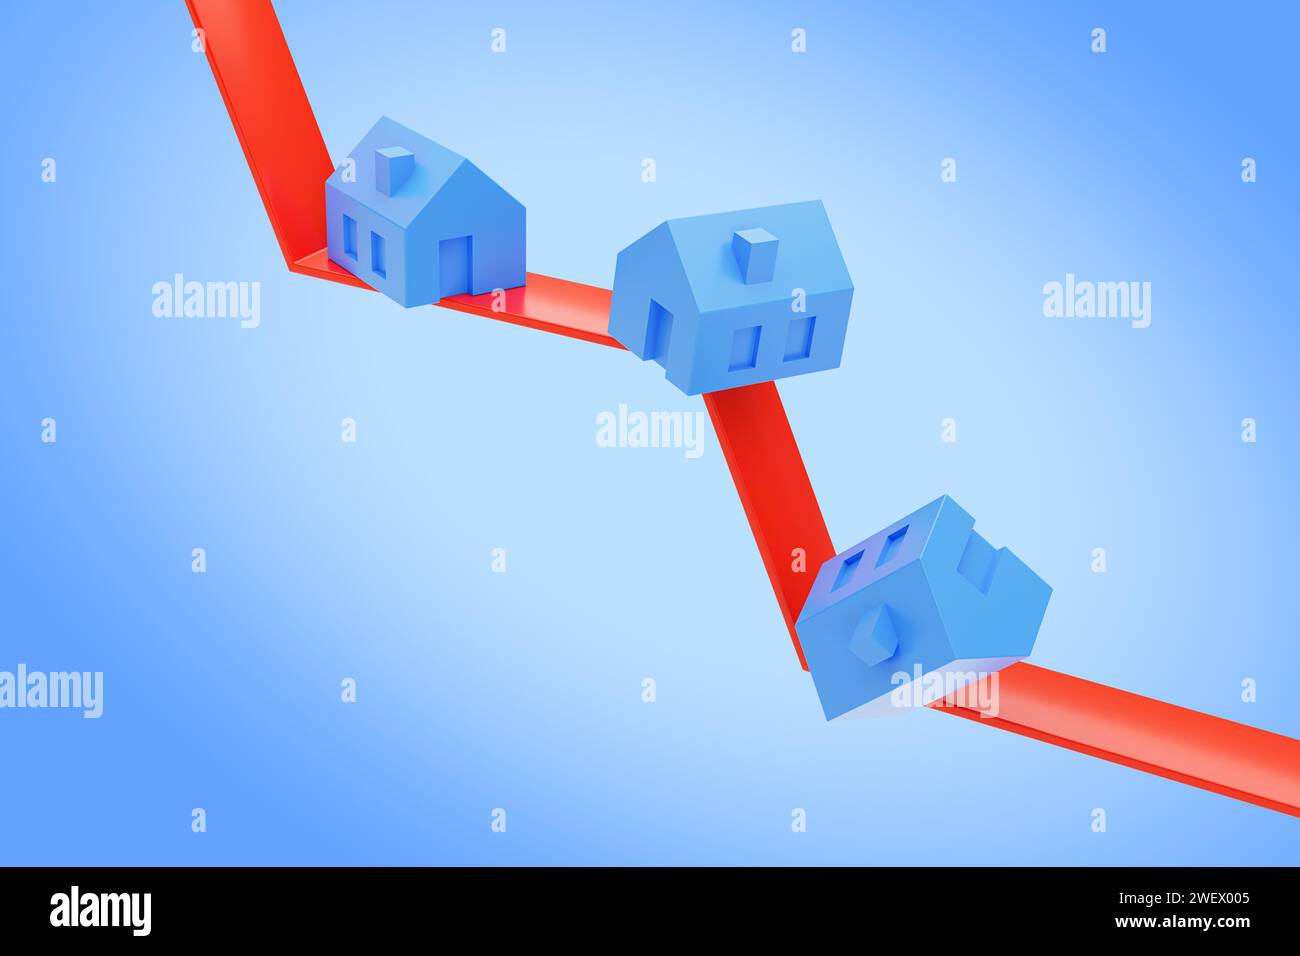 Concetto di caduta dei prezzi immobiliari. diverse case blu che cadono su una linea rossa rivolta verso il basso. Sfondo sfumato blu Foto Stock